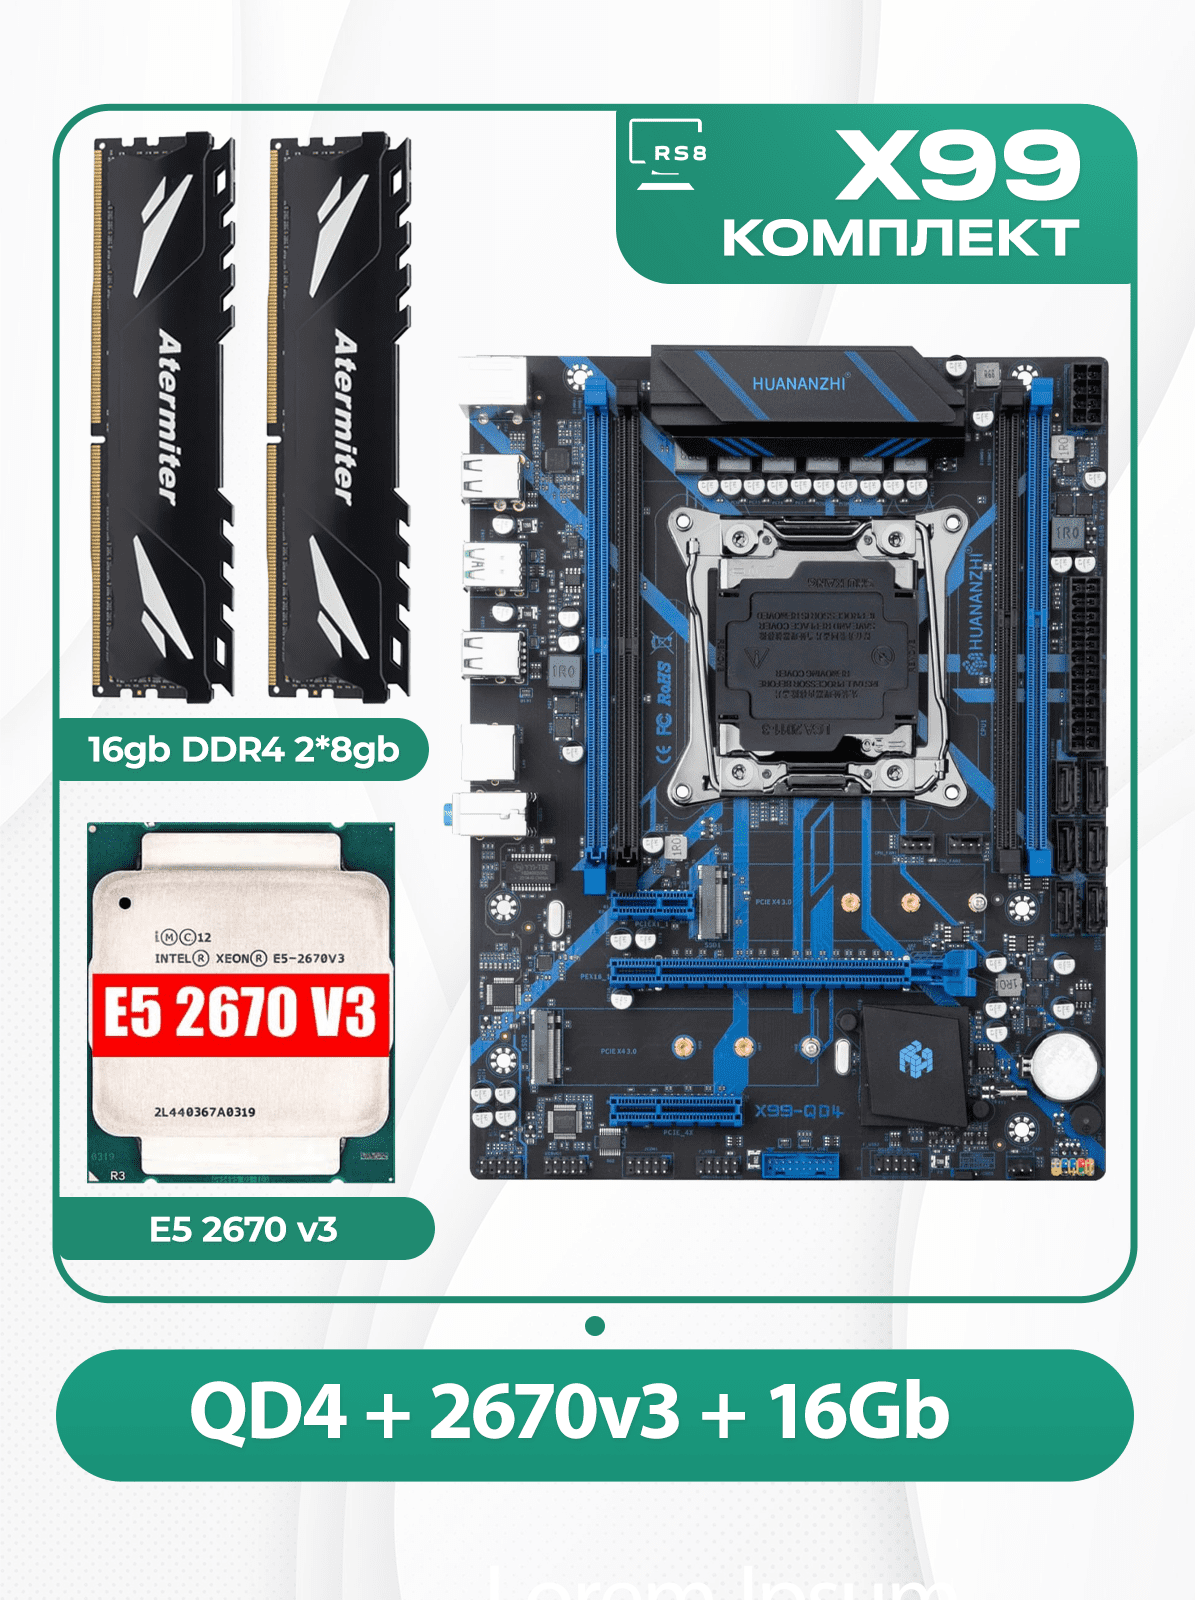 Комплект материнской платы X99: Huananzhi QD4 2011v3 + Xeon E5 2670v3 + DDR4 16Гб 2666Мгц Atermiter